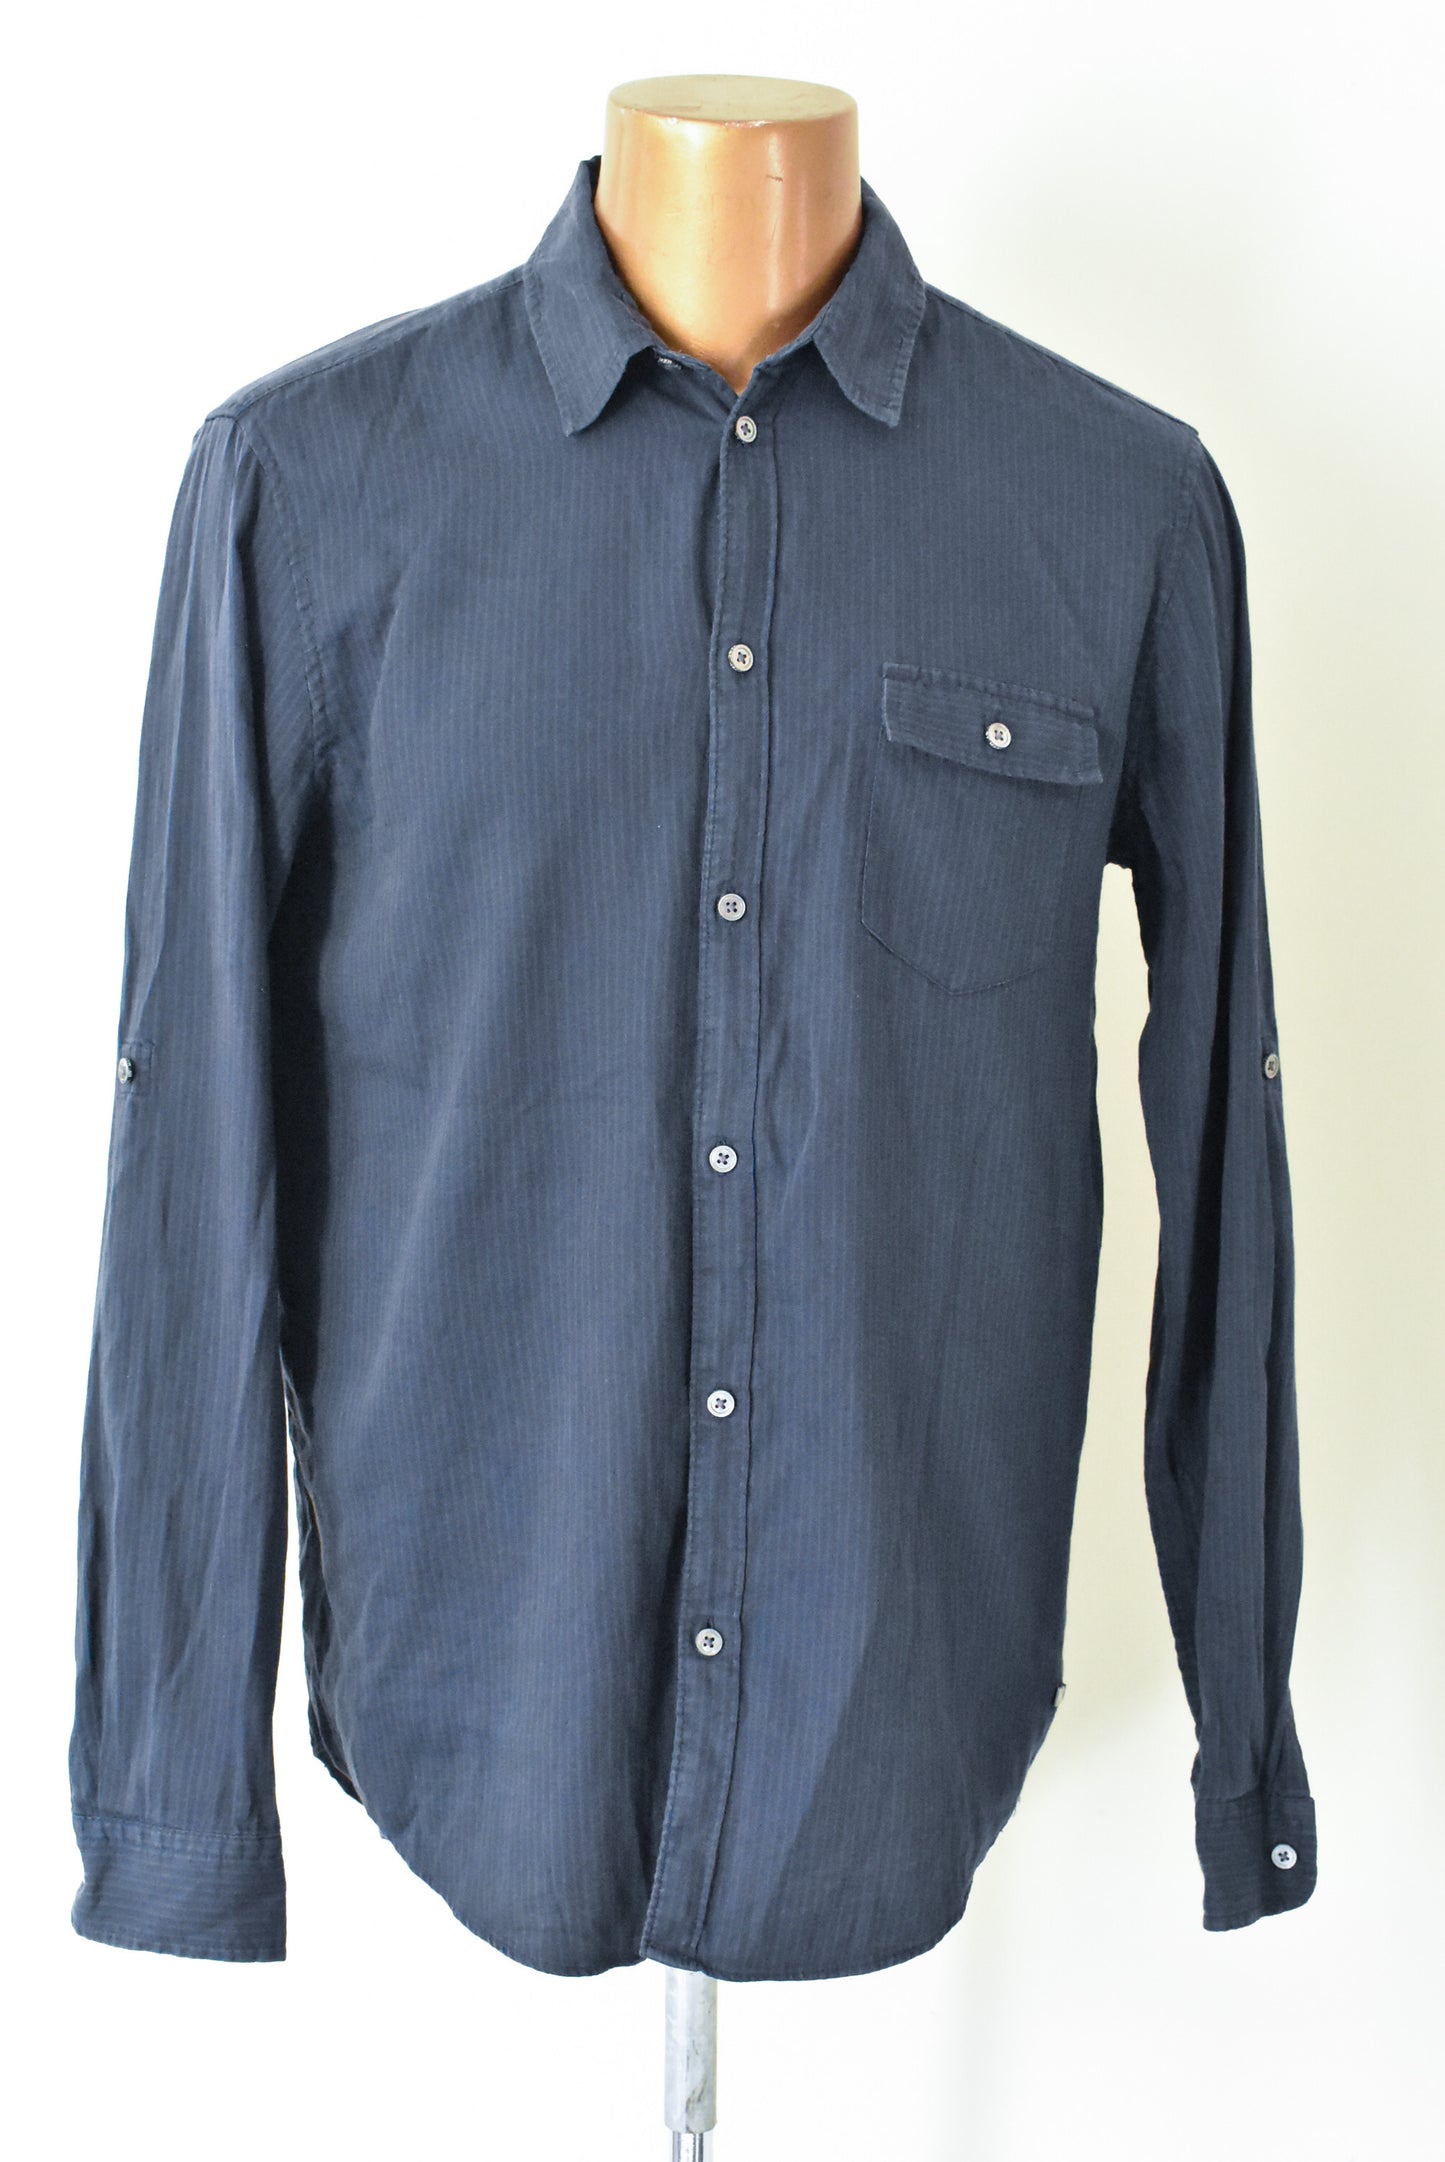 Marc Jacobs classic fit button down shirt, L